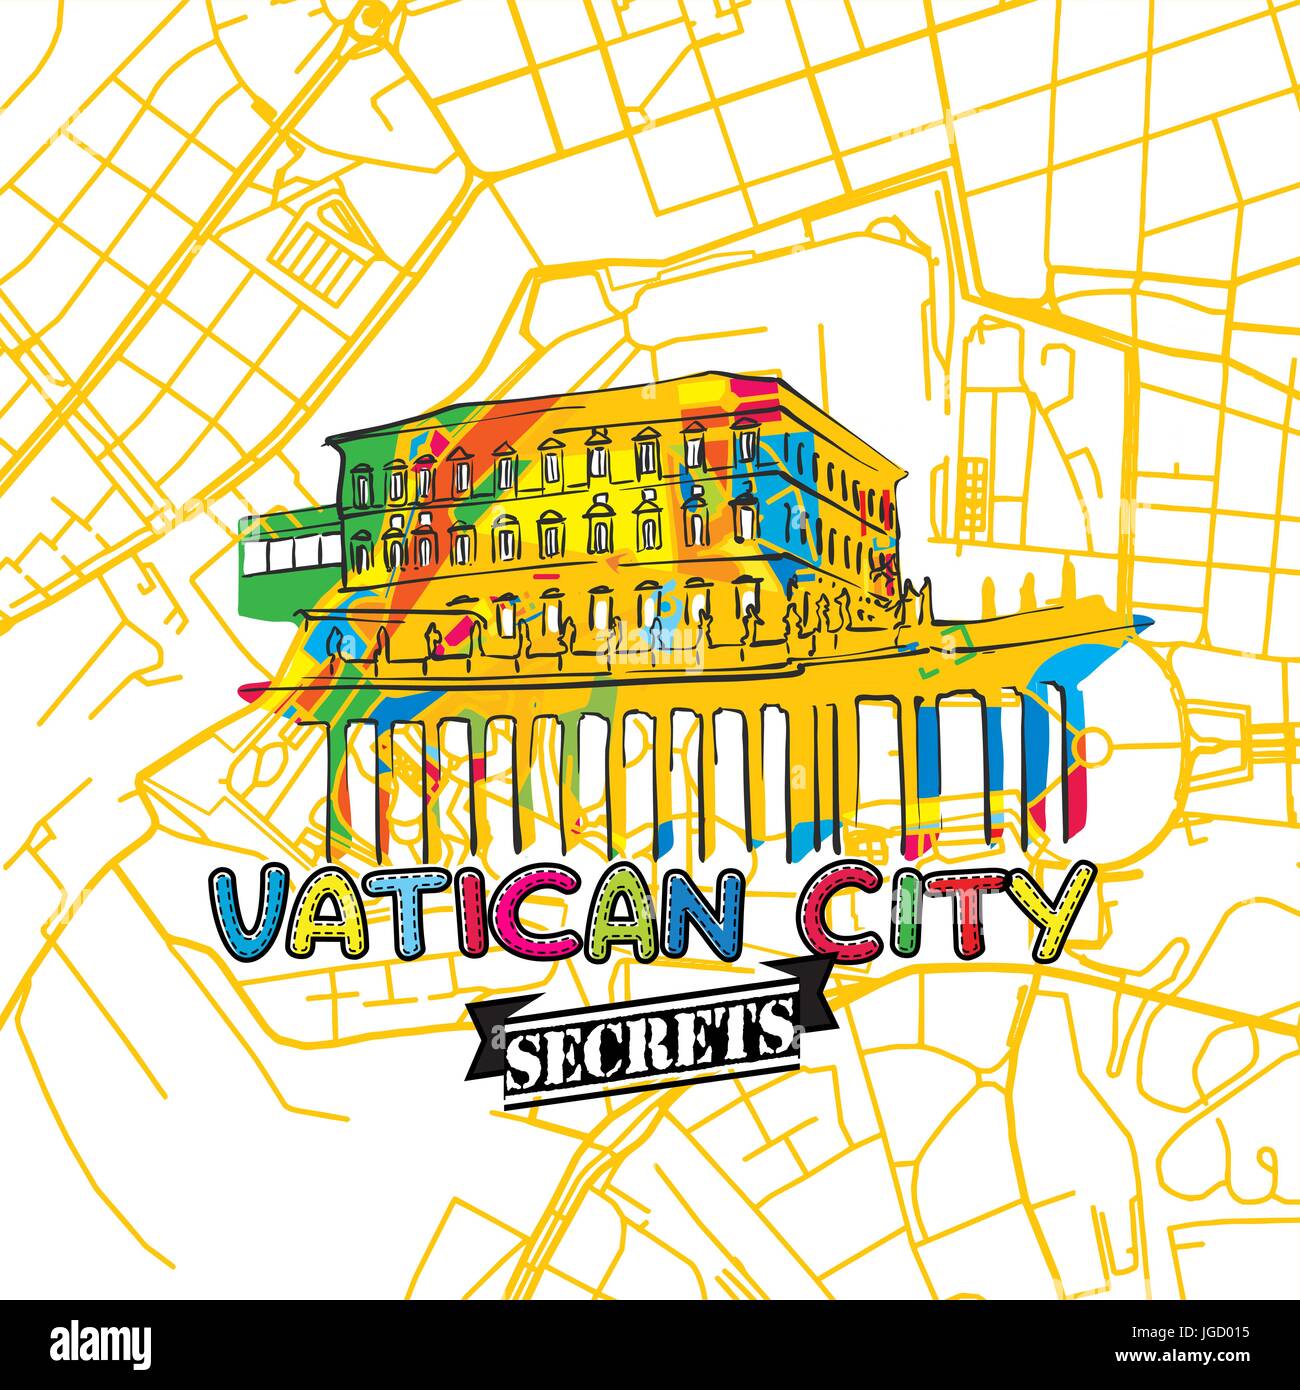 Vatikan Reisen Geheimnisse Art Map für die Zuordnung von Experten und Reiseführer. Handgemachte Stadt Logo, Typo-Abzeichen und Hand gezeichnete Vektor-Bild an der Spitze sind gruppiert eine Stock Vektor